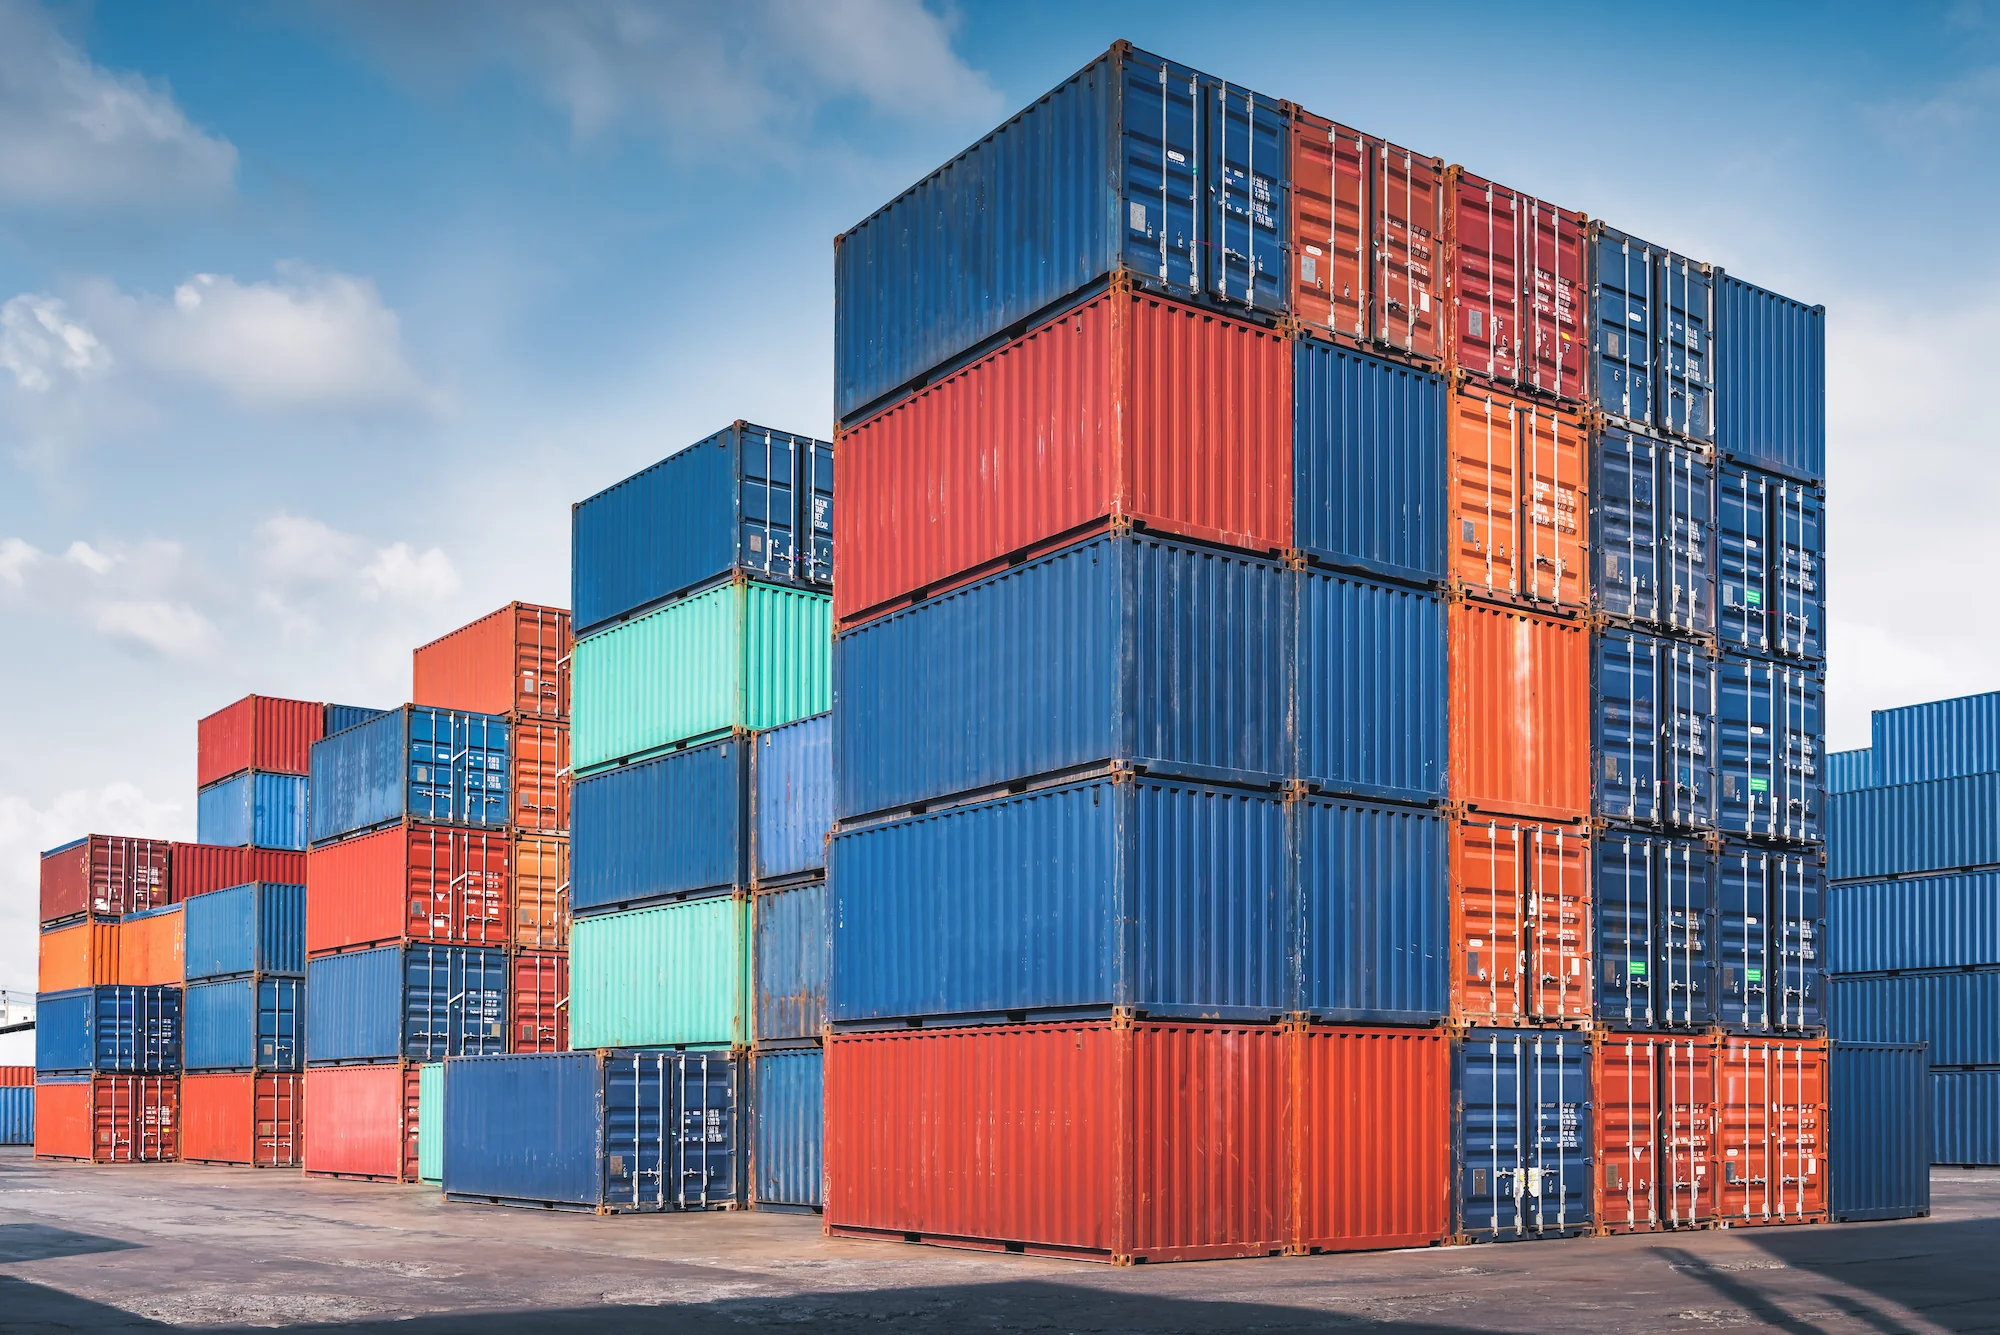 Container là các đơn vị vận chuyển hàng hóa được làm từ thép, có hình dạng hộp chữ nhật